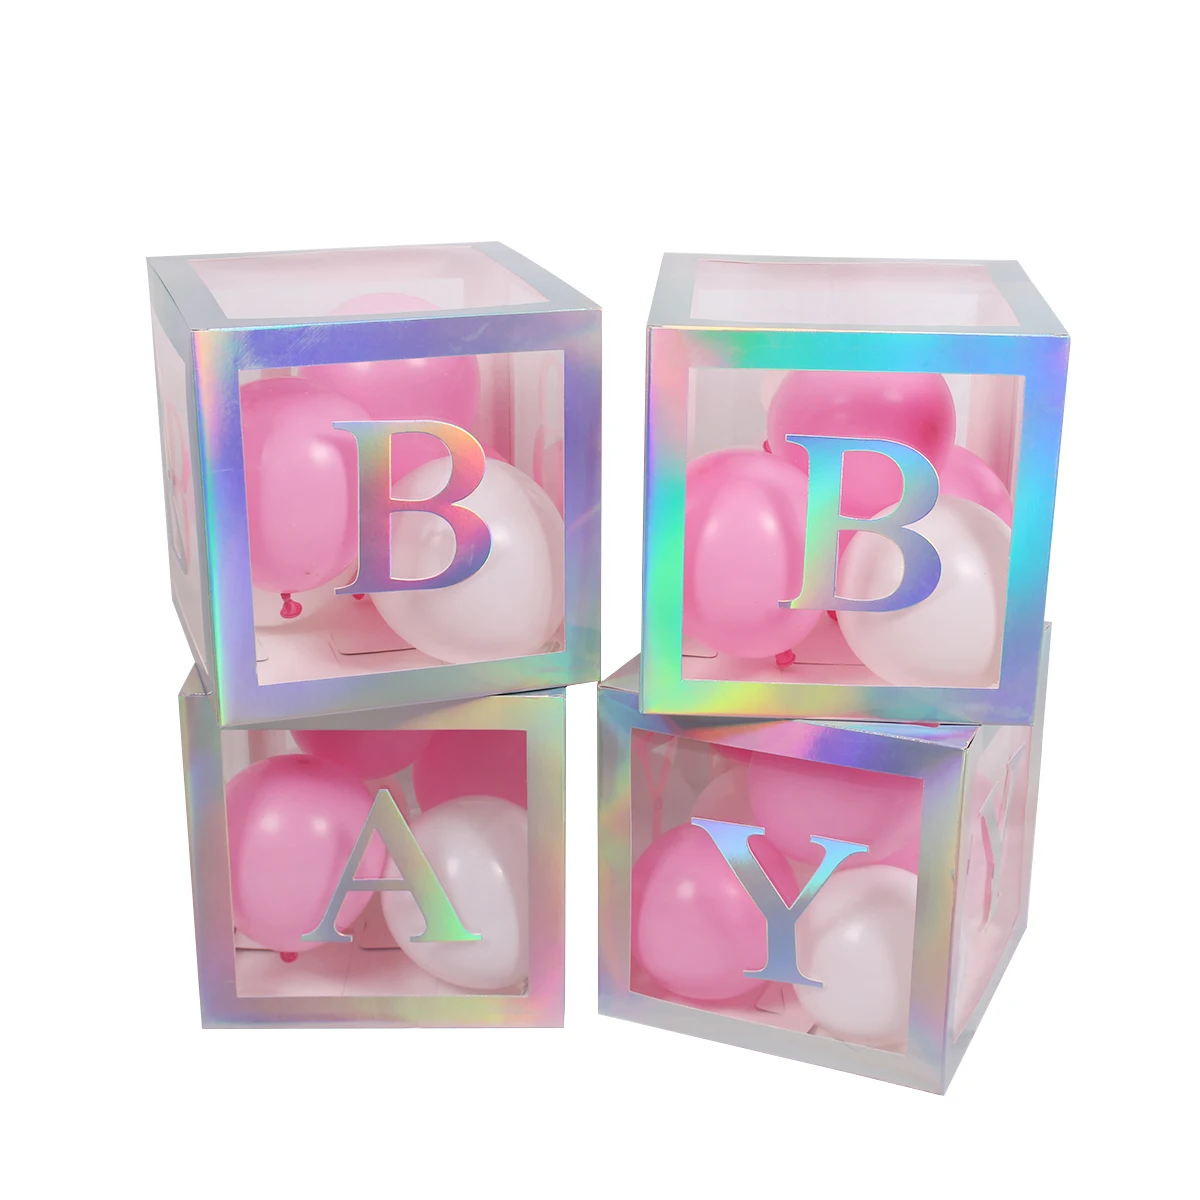 Английское имя, алфавит, прозрачная коробка, украшение для хранения, воздушный шар для детского душа, украшения для первого дня рождения, украшения для детей